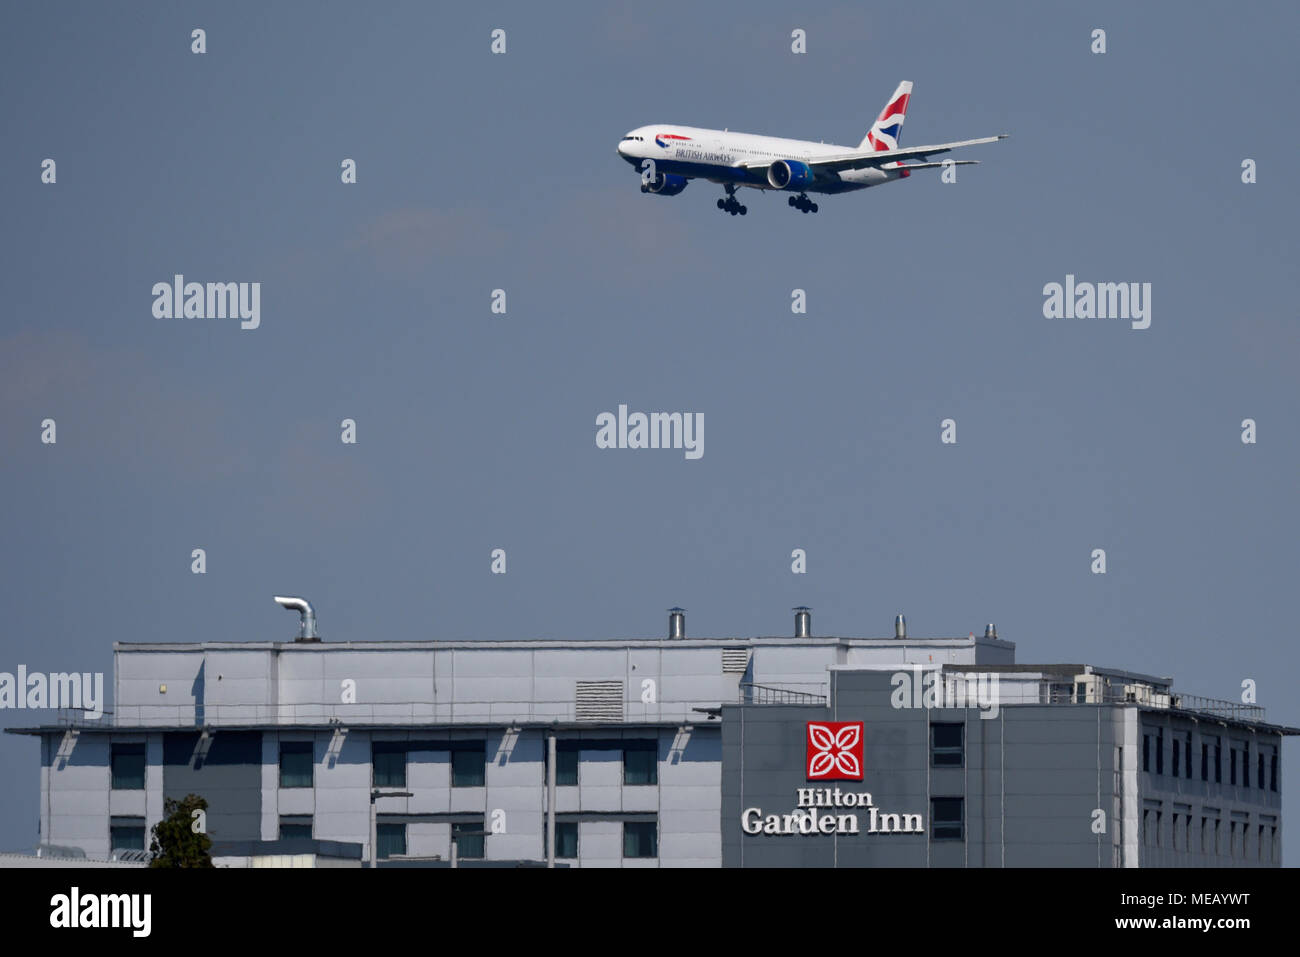 British Airways Boeing 777 jet plane over Hilton Garden Inn hotel when landing at London Heathrow Airport, UK Stock Photo